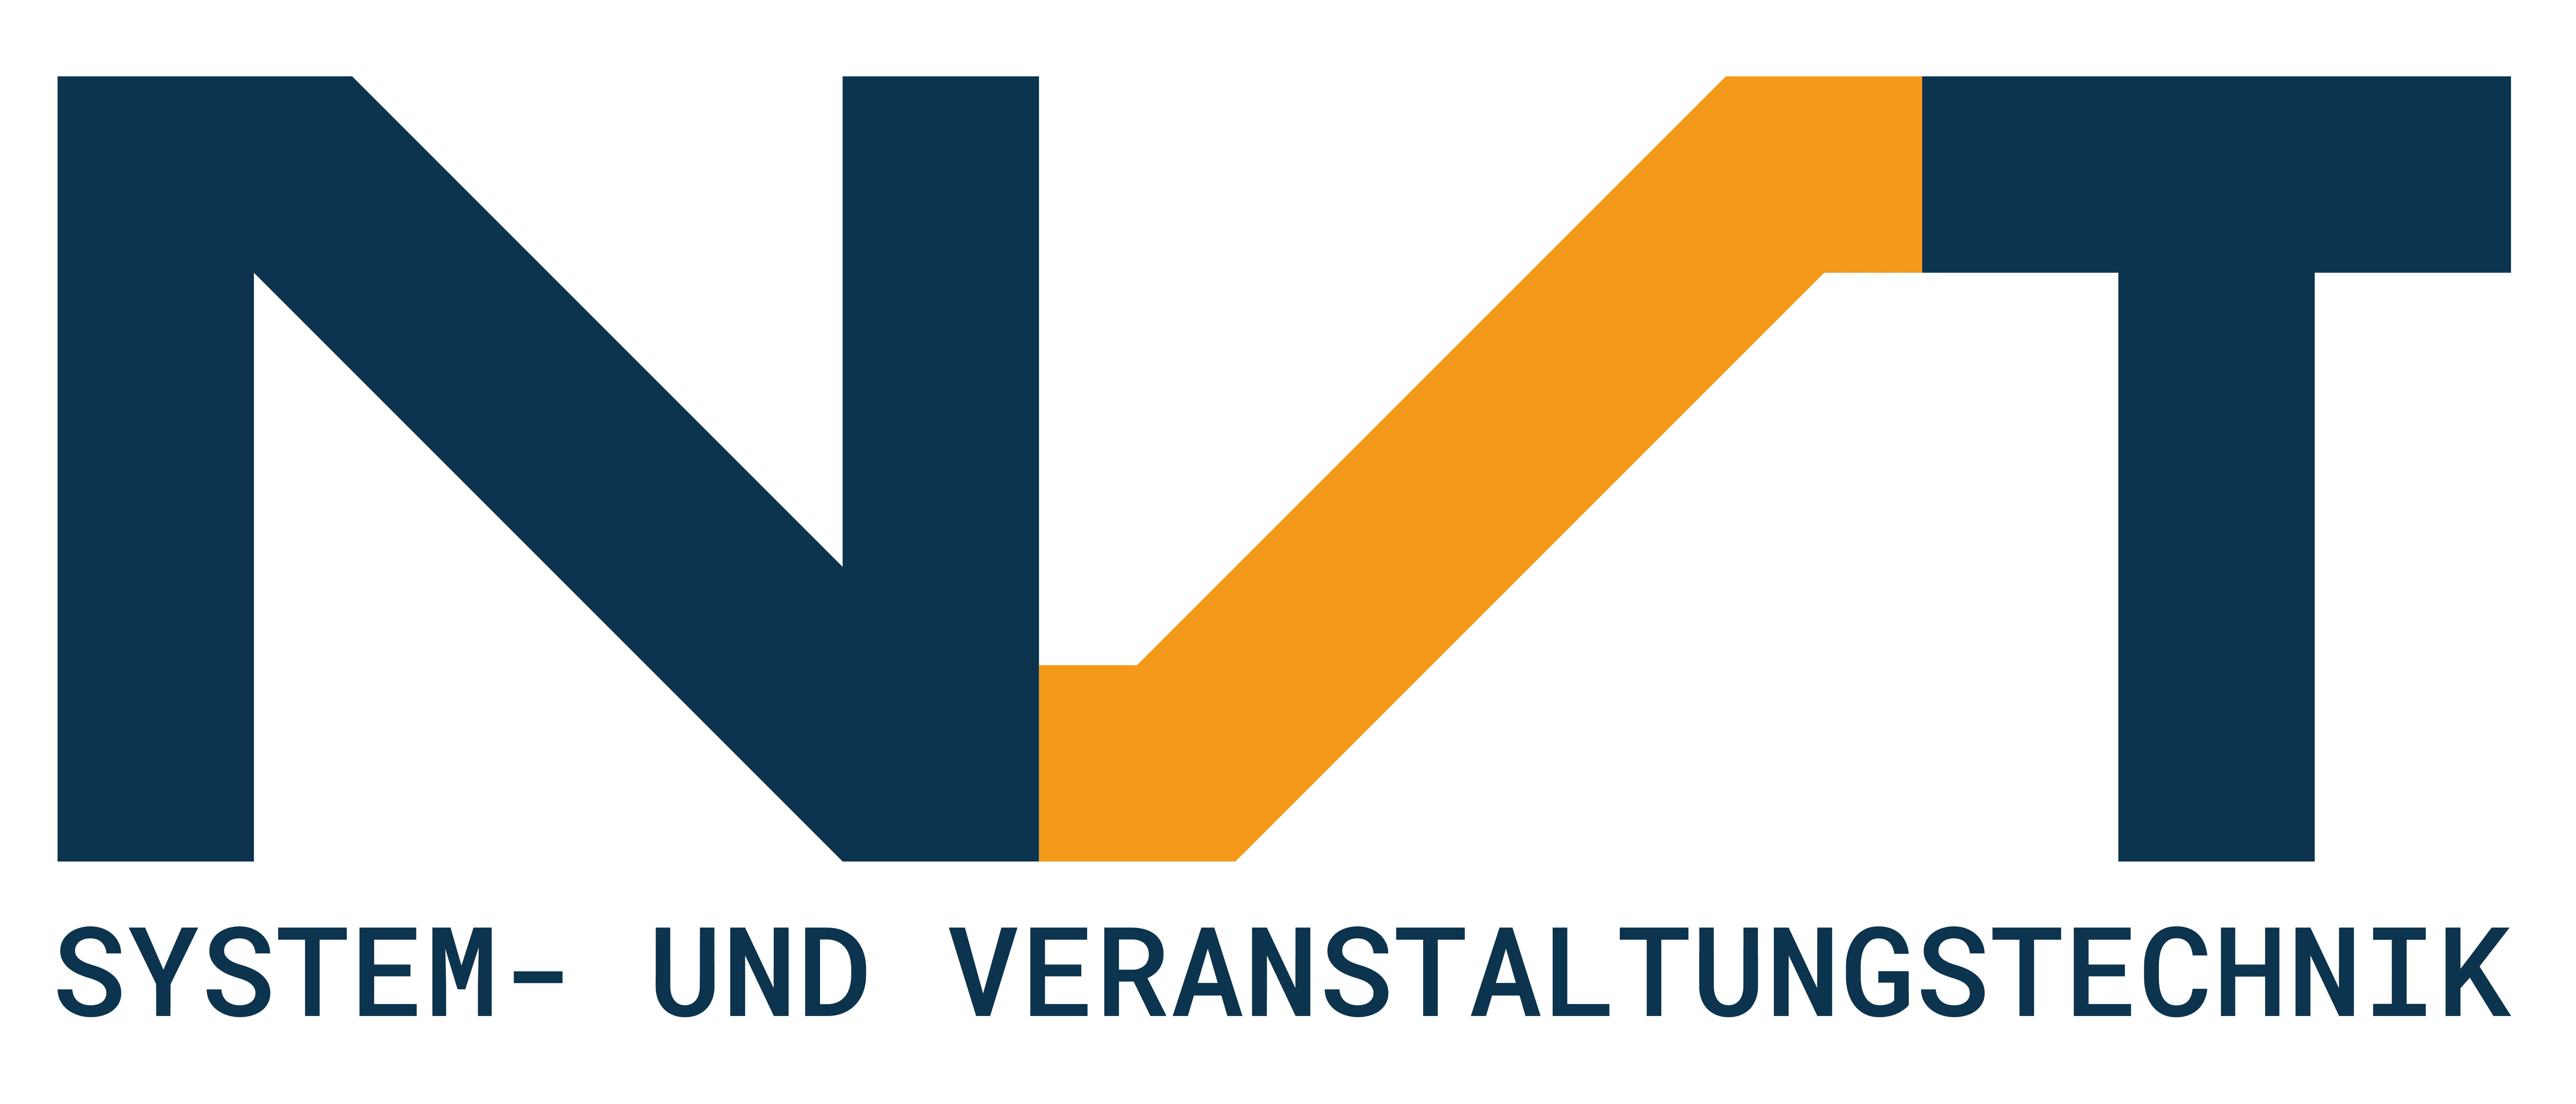 logo_nst.png